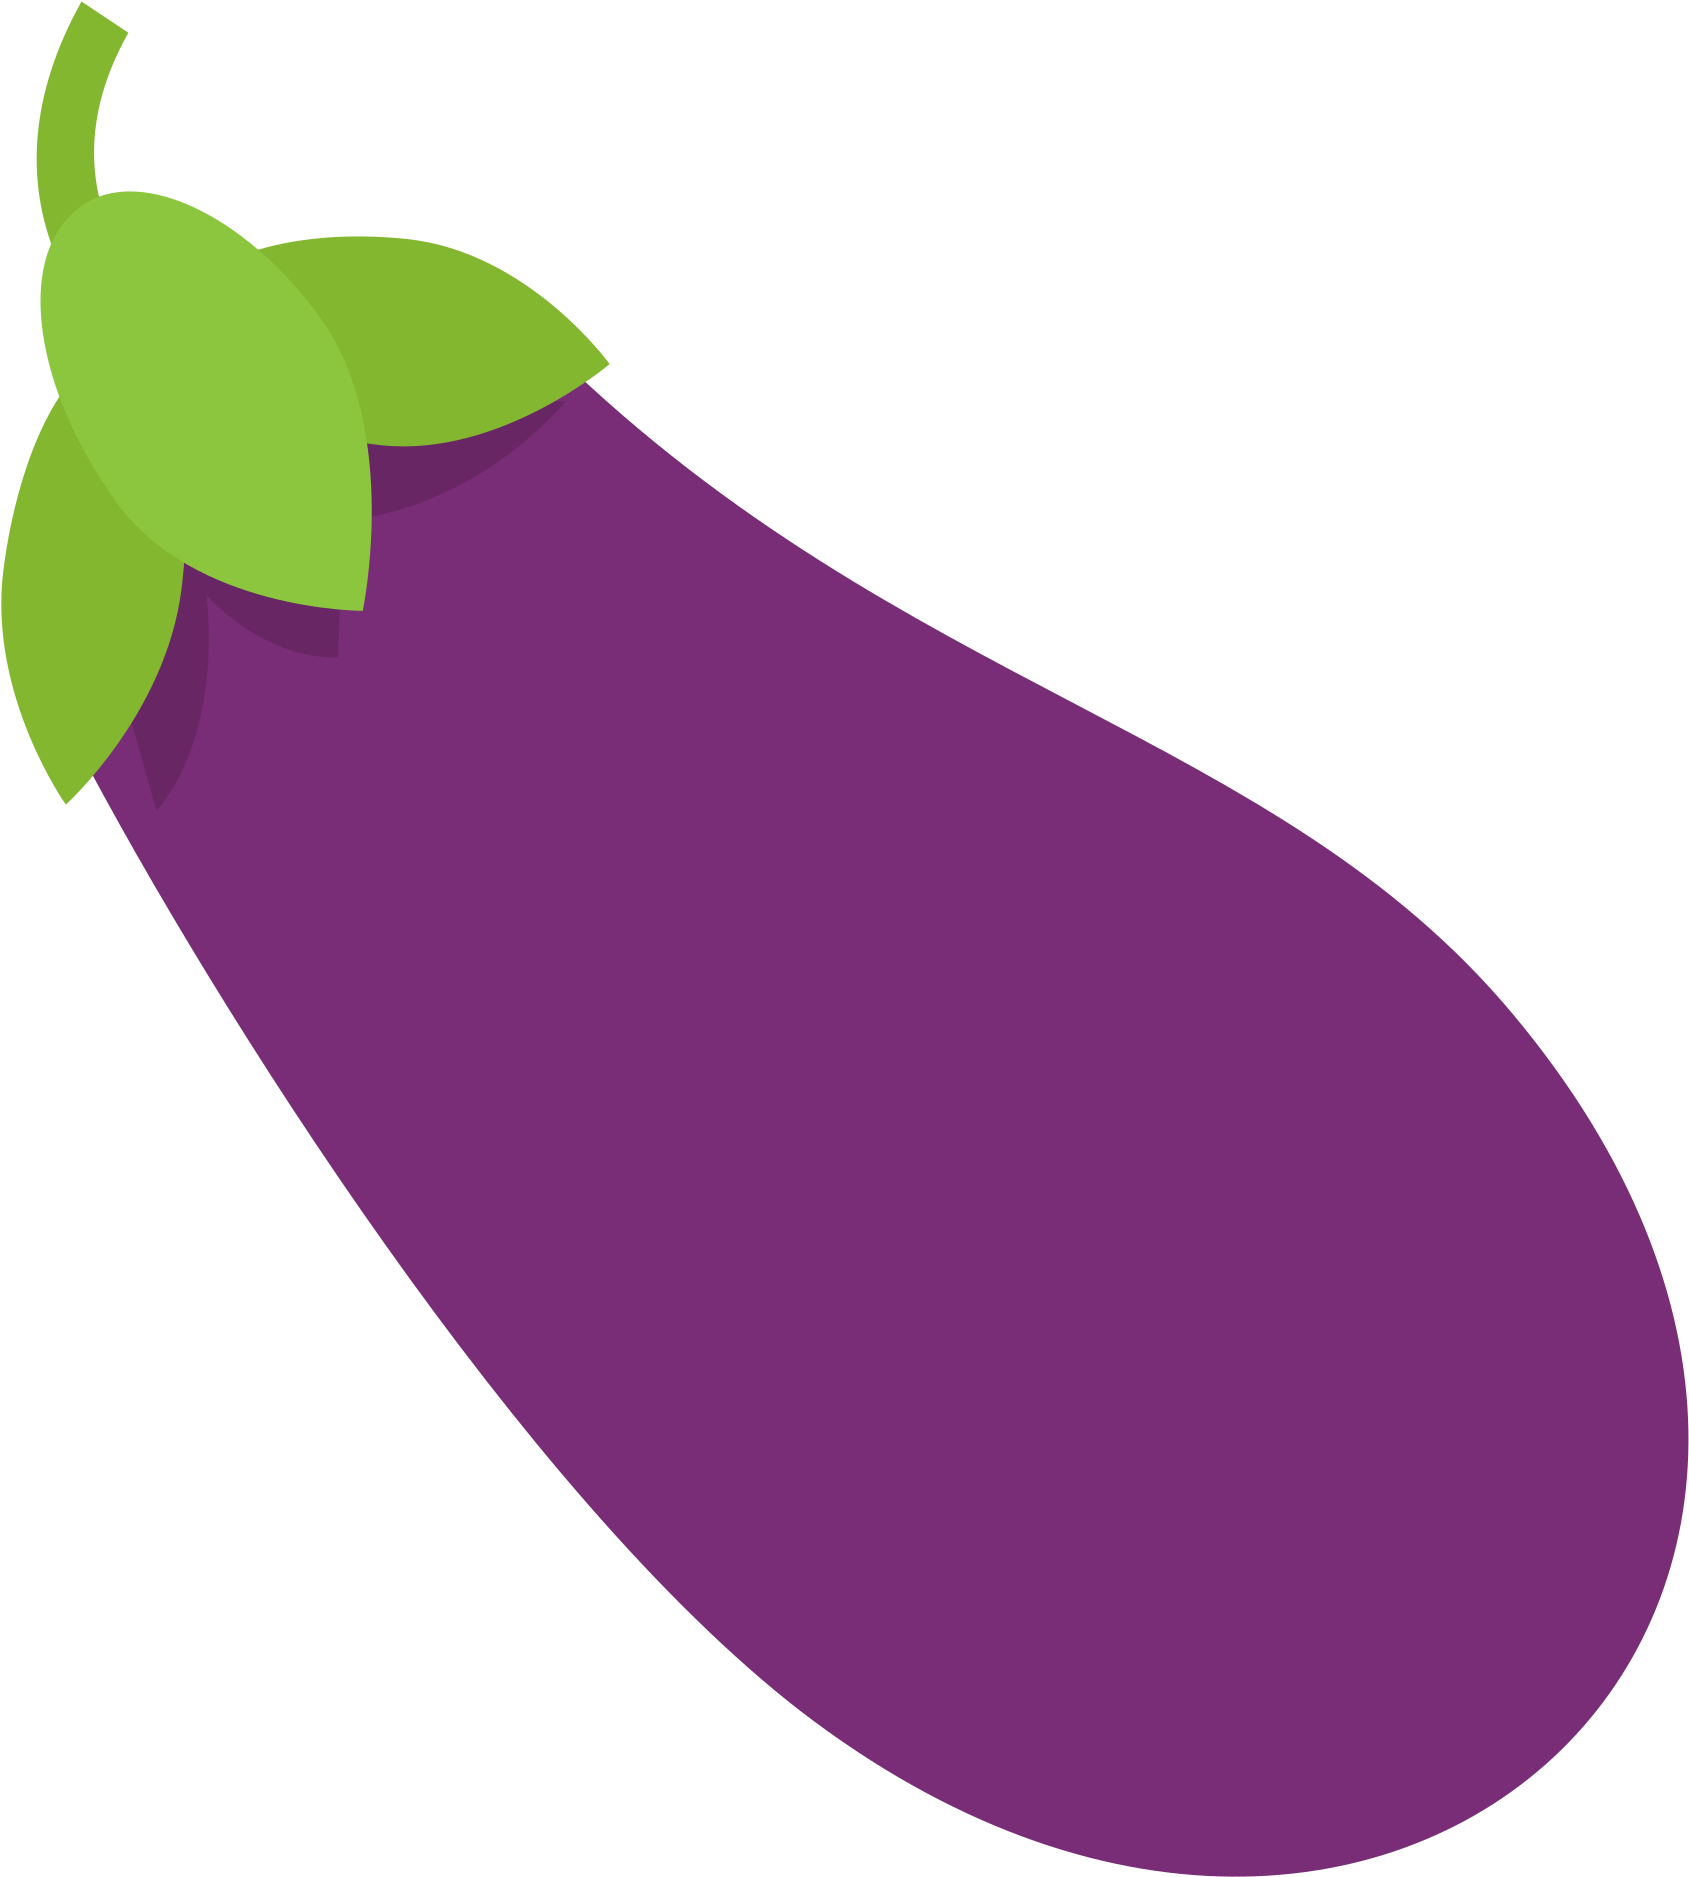 Brinjal Eggplant Free Transparent Image HQ PNG Image